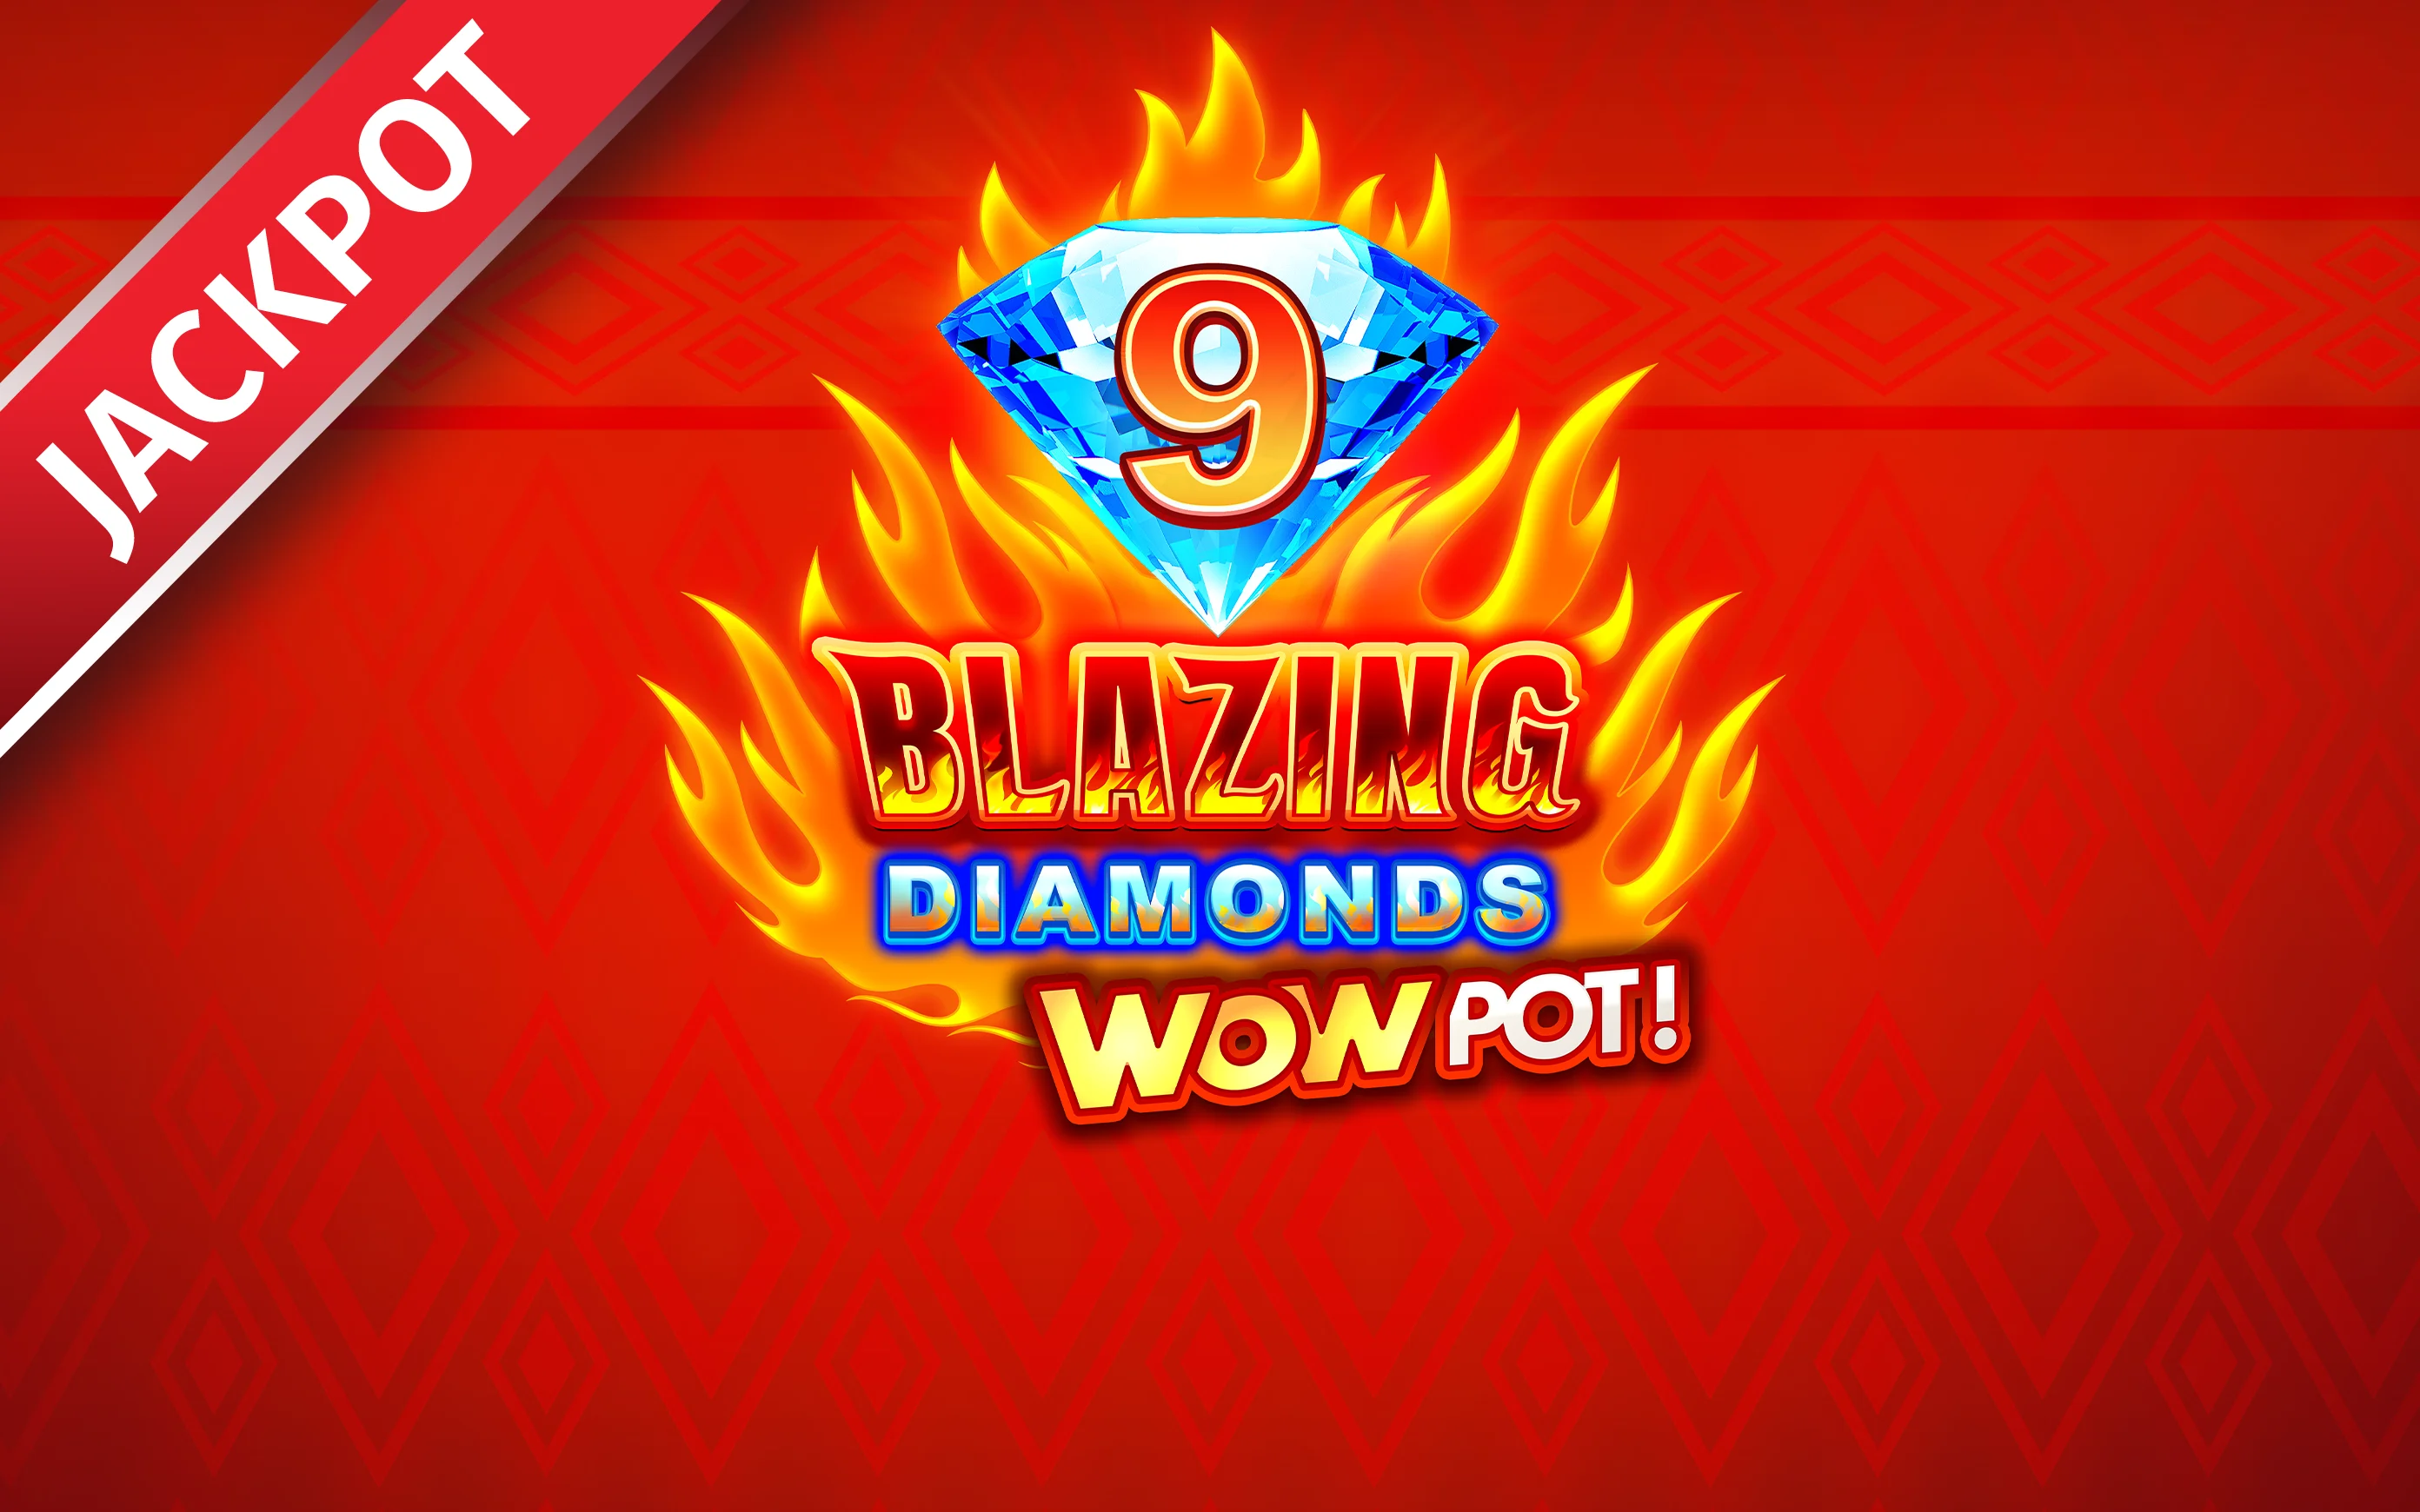 Jouer à 9 Blazing Diamonds WOWPOT sur le casino en ligne Starcasino.be